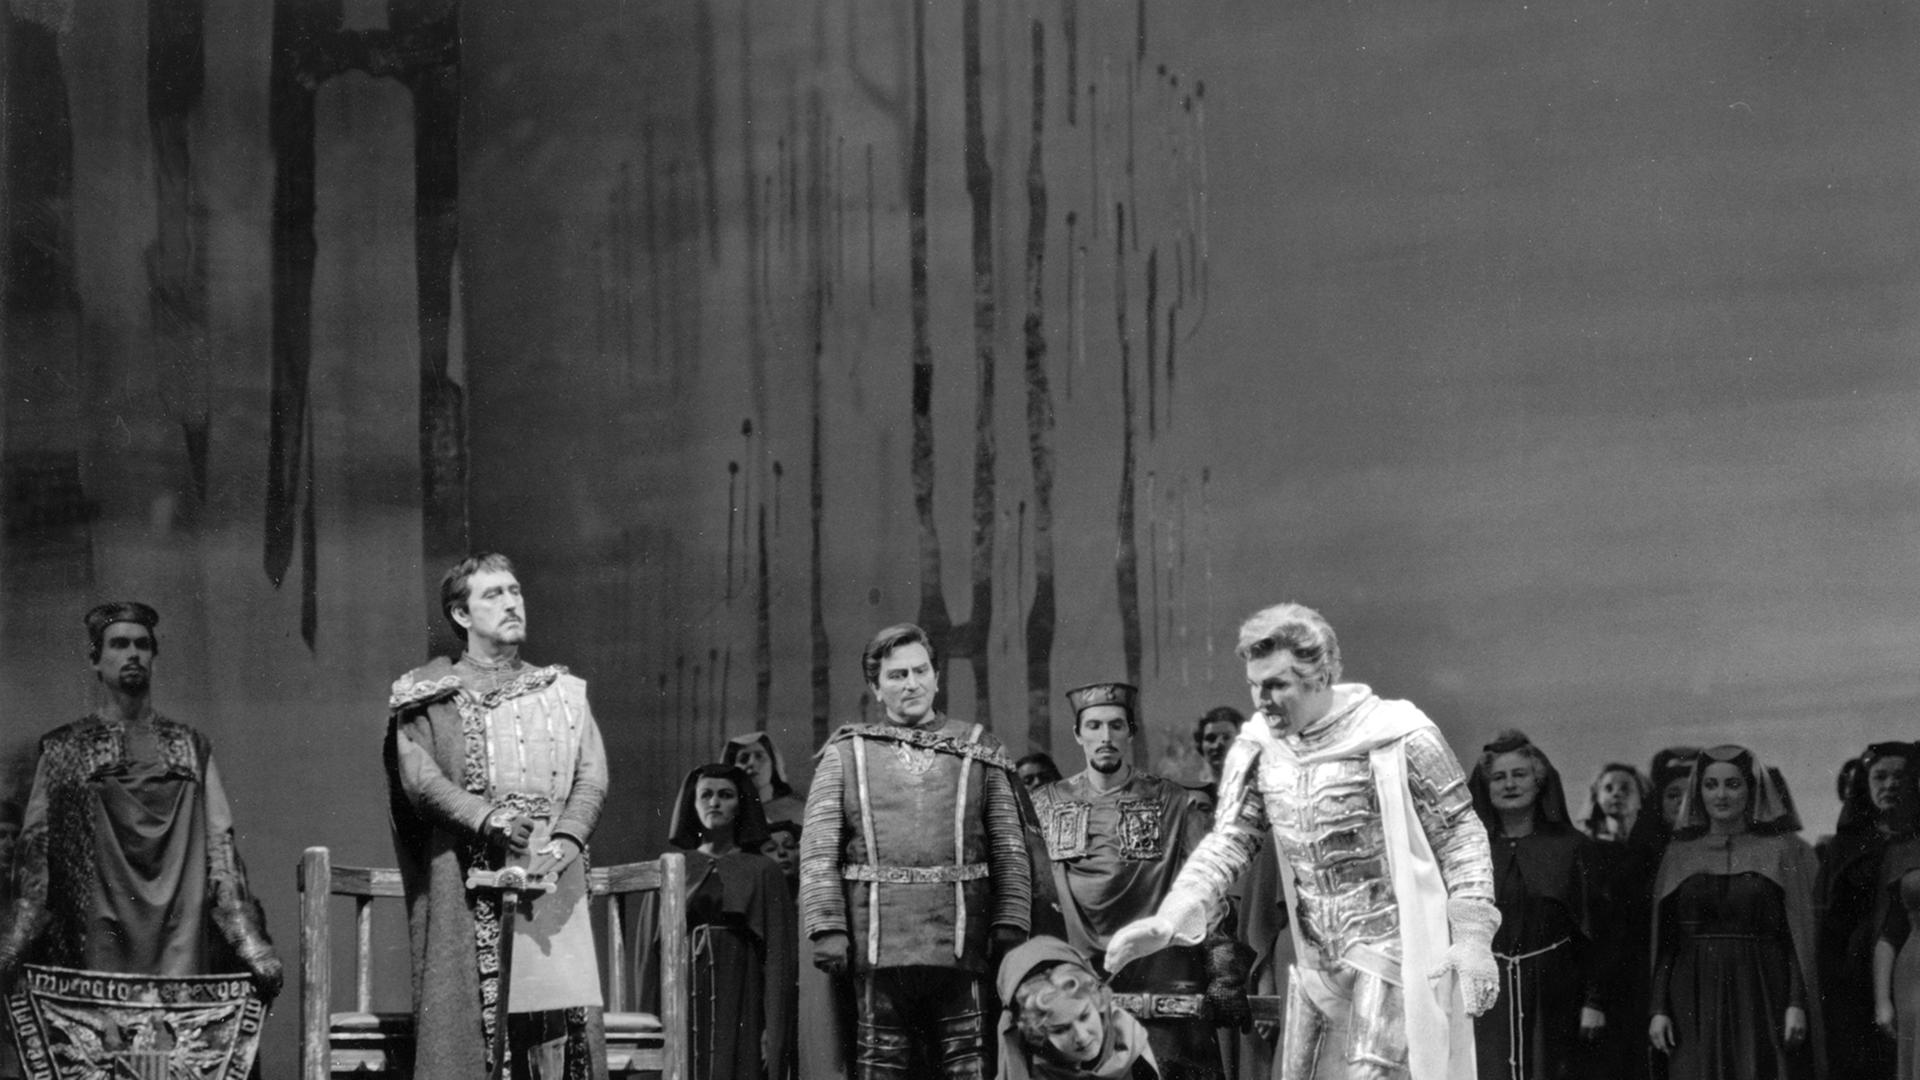 Szene aus dem ersten Akt der romatischen Oper "Lohengrin" von Richard Wagner mit den deutschen Bass Gottlob Frick als König, dem Bariton Josef Metternich als Heerufer, der norwegischen Sopranistin Ingrid Bjoner als Elsa von Brabant und dem amerikanischen 